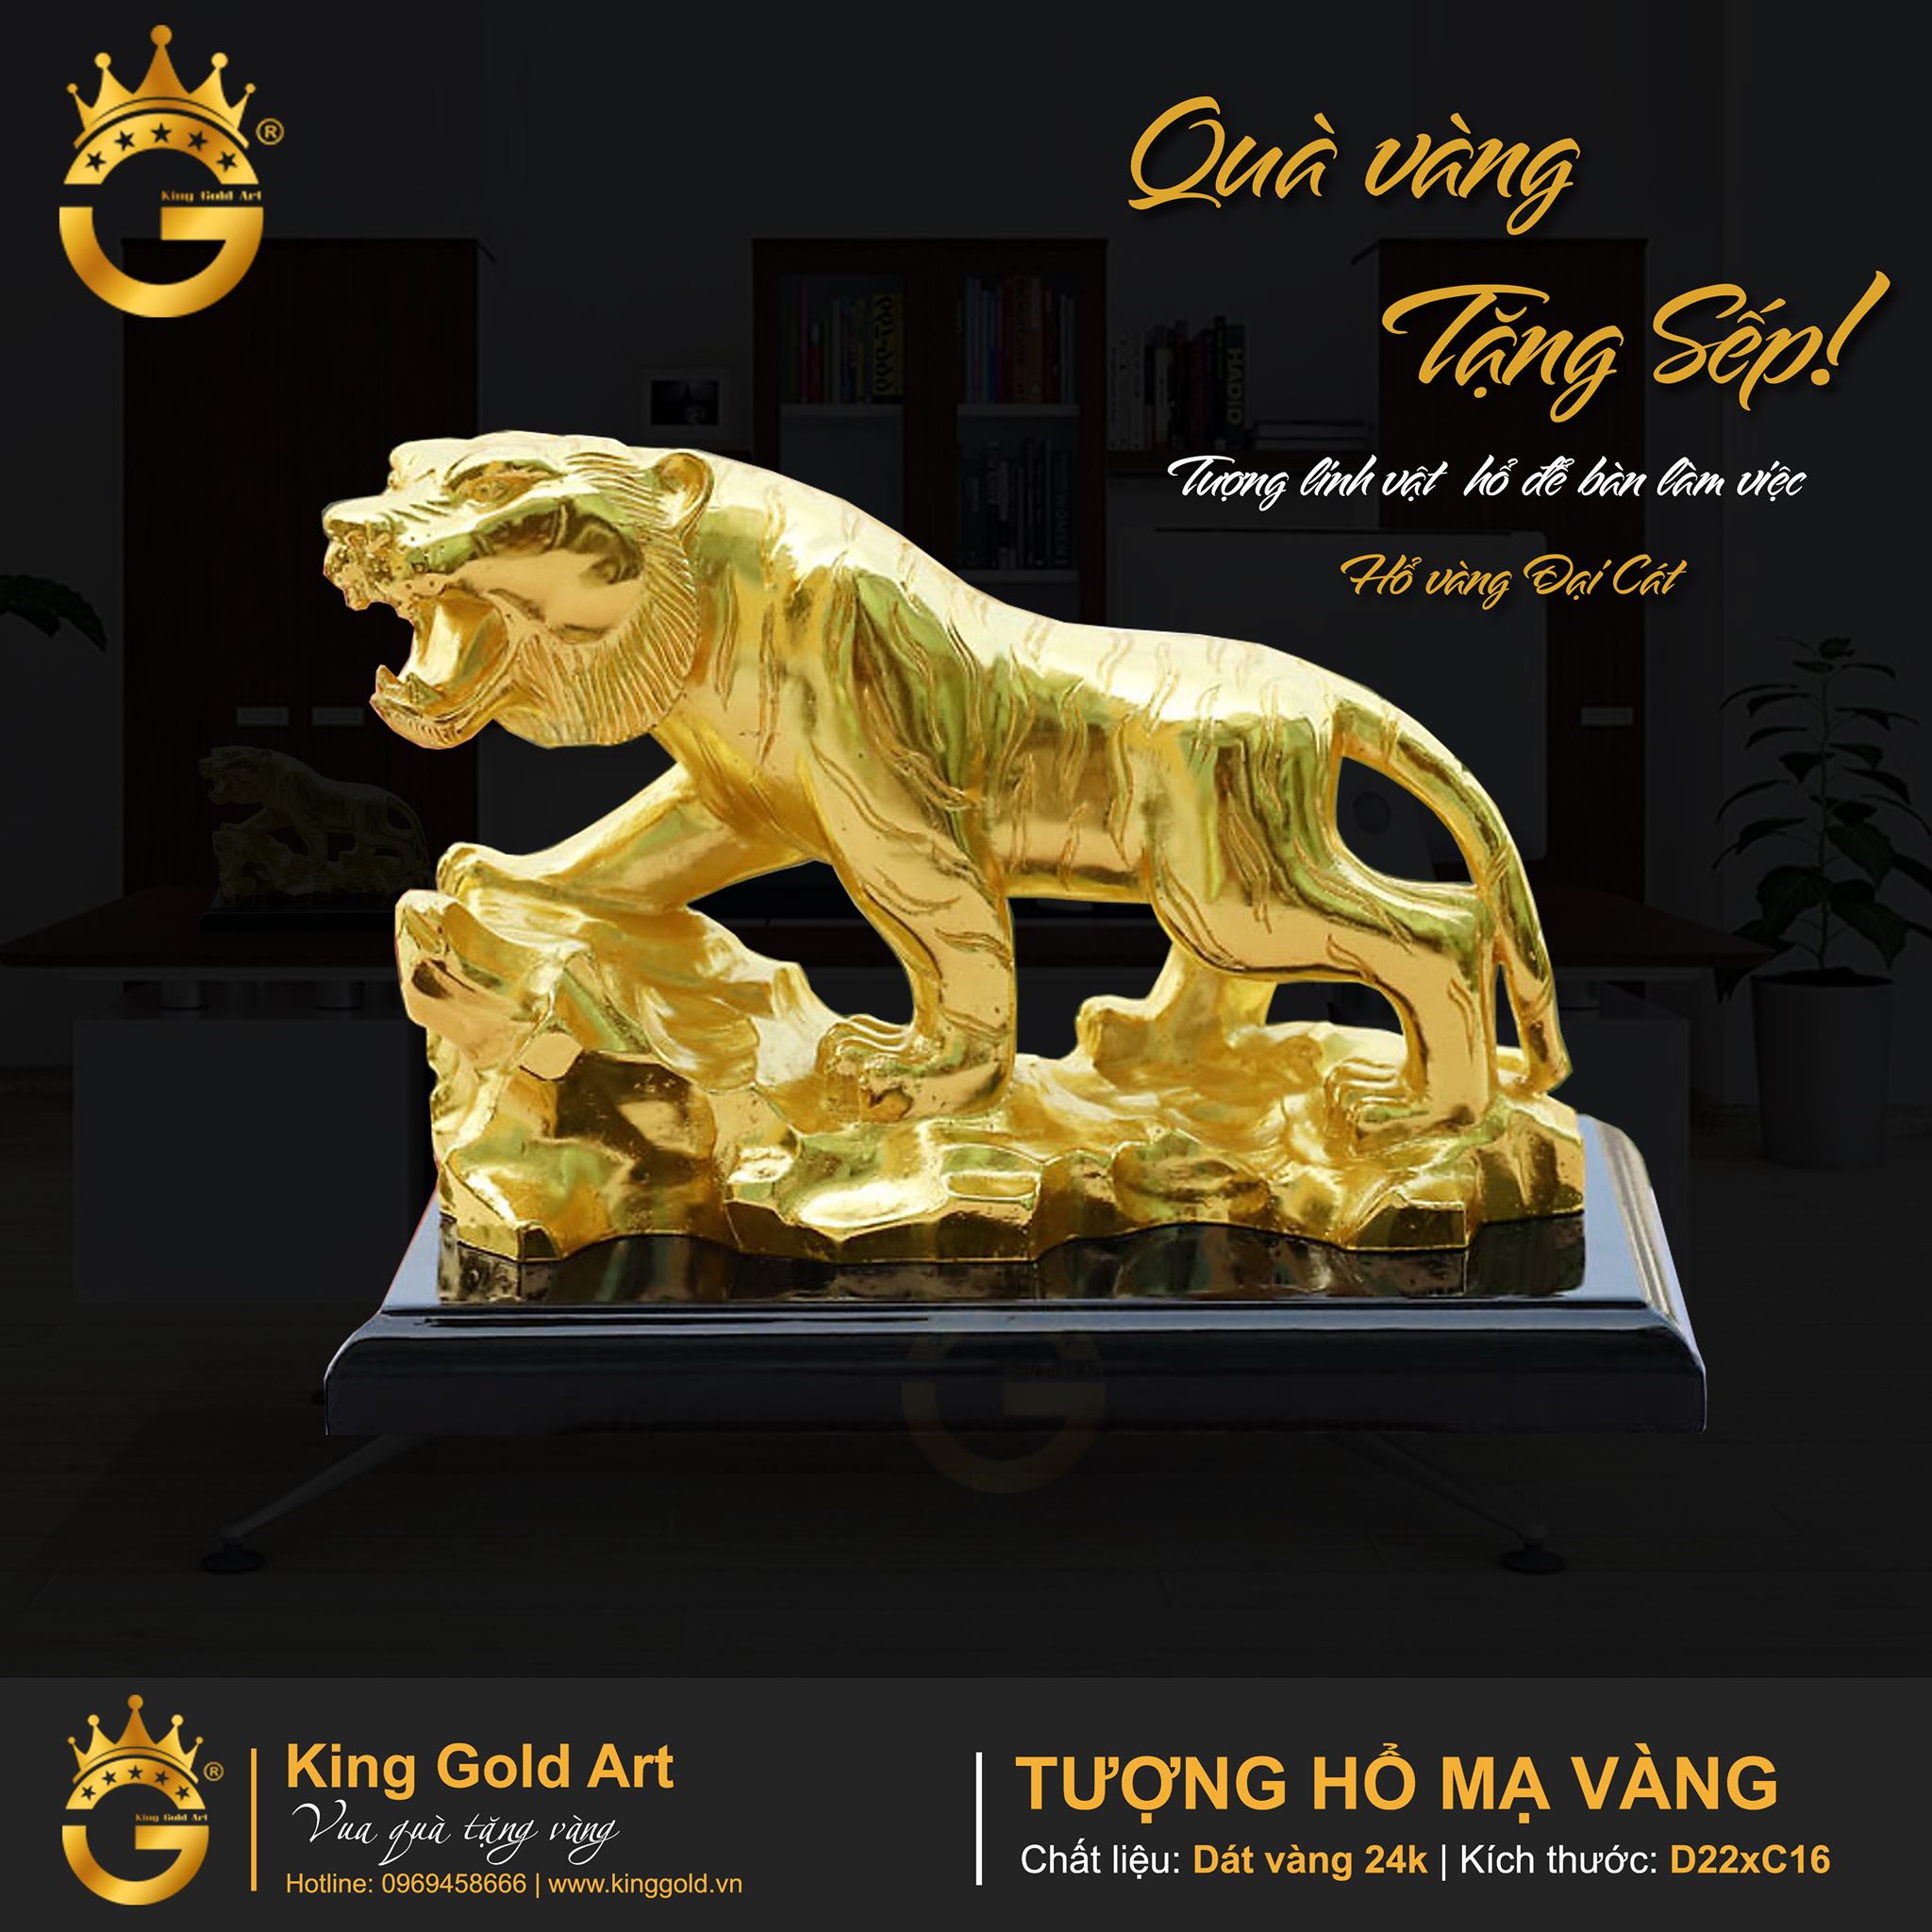 Báo giá tượng hổ vàng đại cát- quà vàng cao cấp tại Đồ đồng Việt0